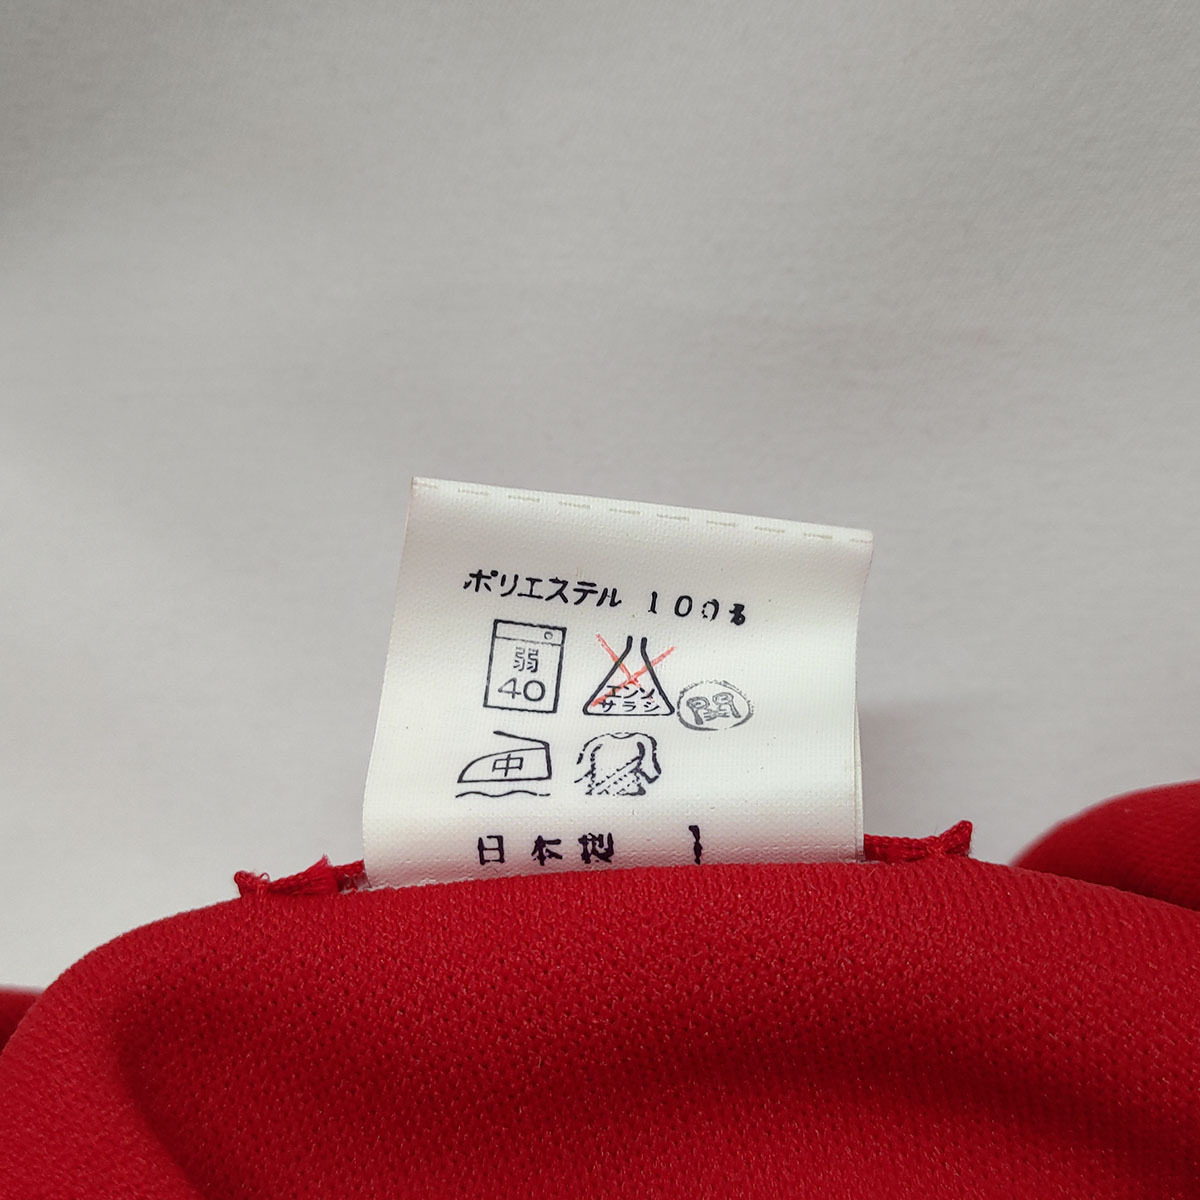 [ used ]eseske- special order jersey jersey red SE303S Kids SSK dead stock Vintage 